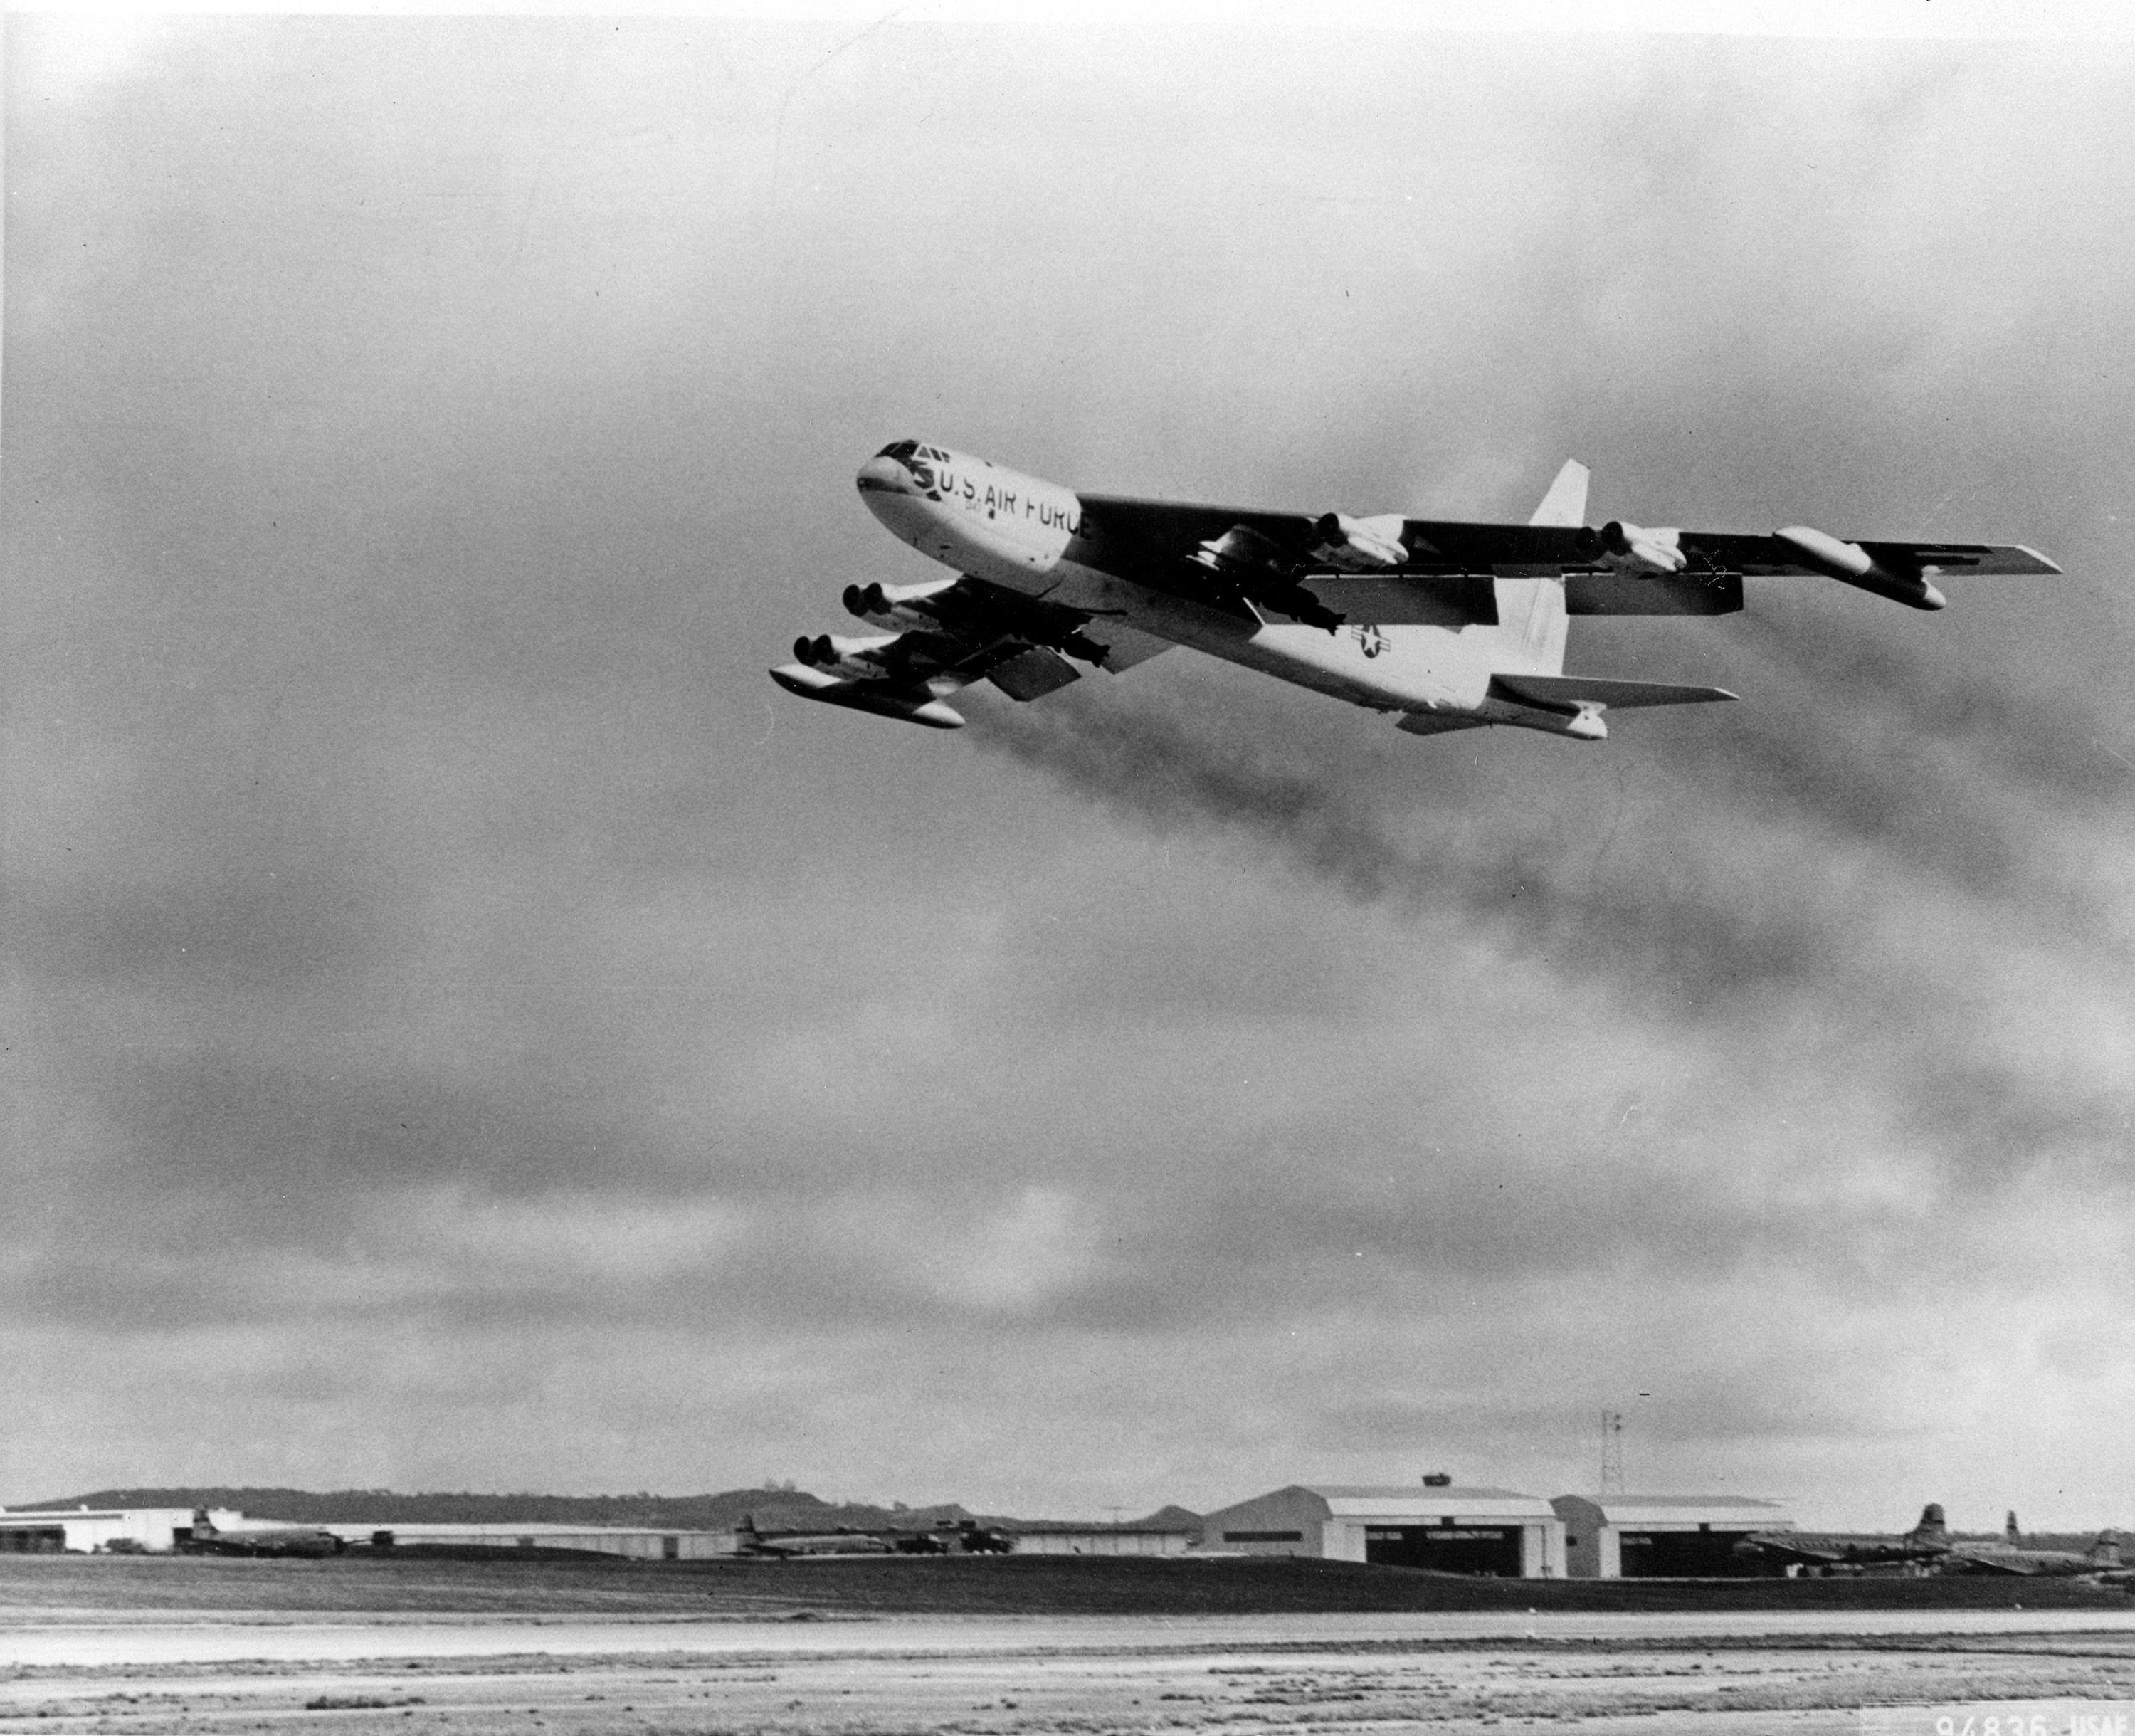 Снимка от 1955 г. показва американския бомбардировач B-52, който излита от базата в Гуам, за да удари във Виетнам